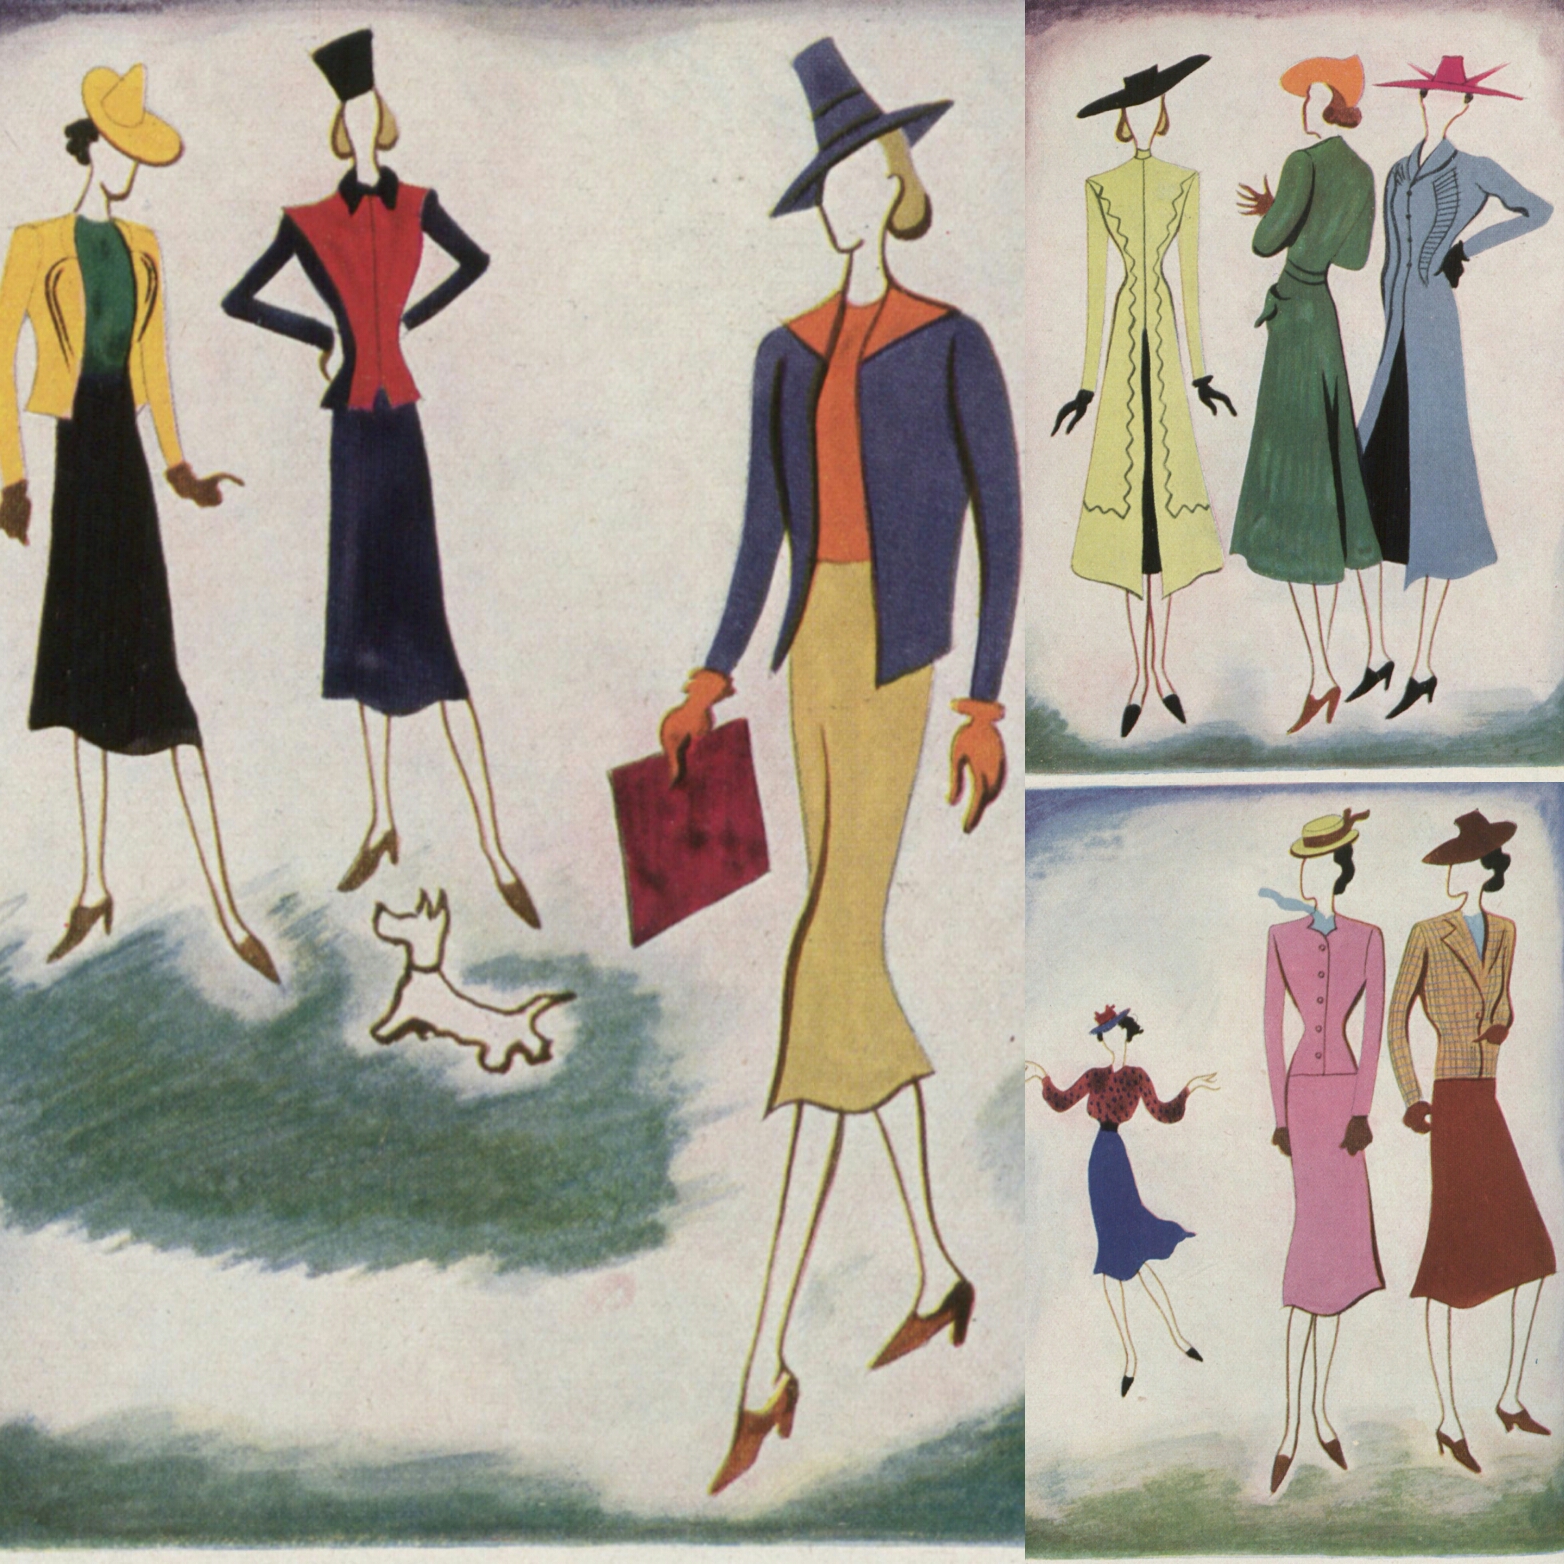 Blog Modemuze. Vintage en de stijl van vroeger. Afb. 1 Vogue Paris 1938 waarop felle kleurcombinaties te zien zijn